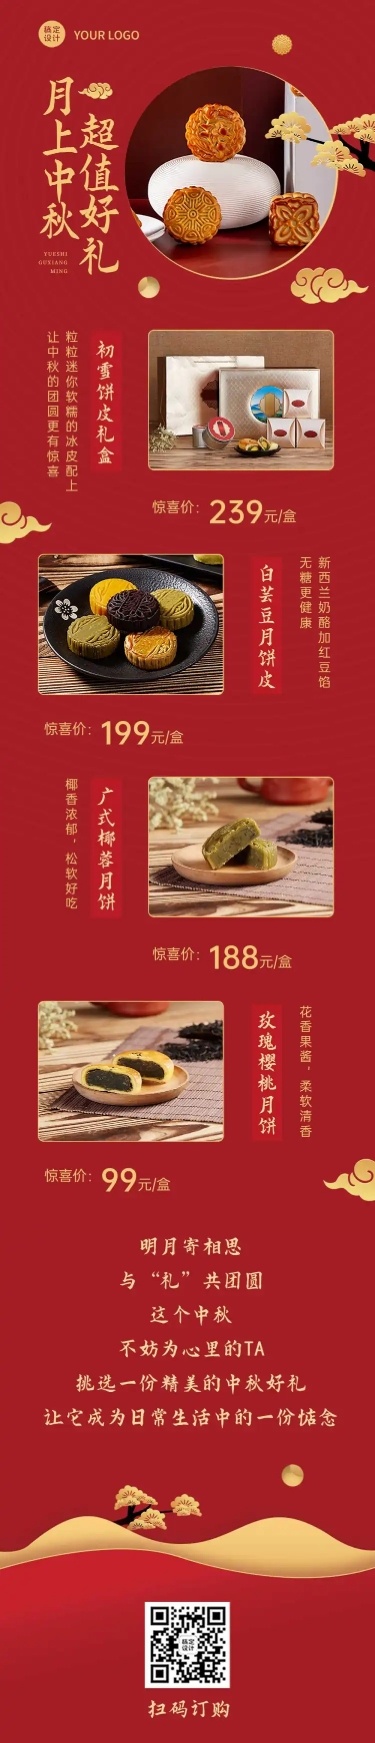 中秋餐饮美食节日营销中国风长图